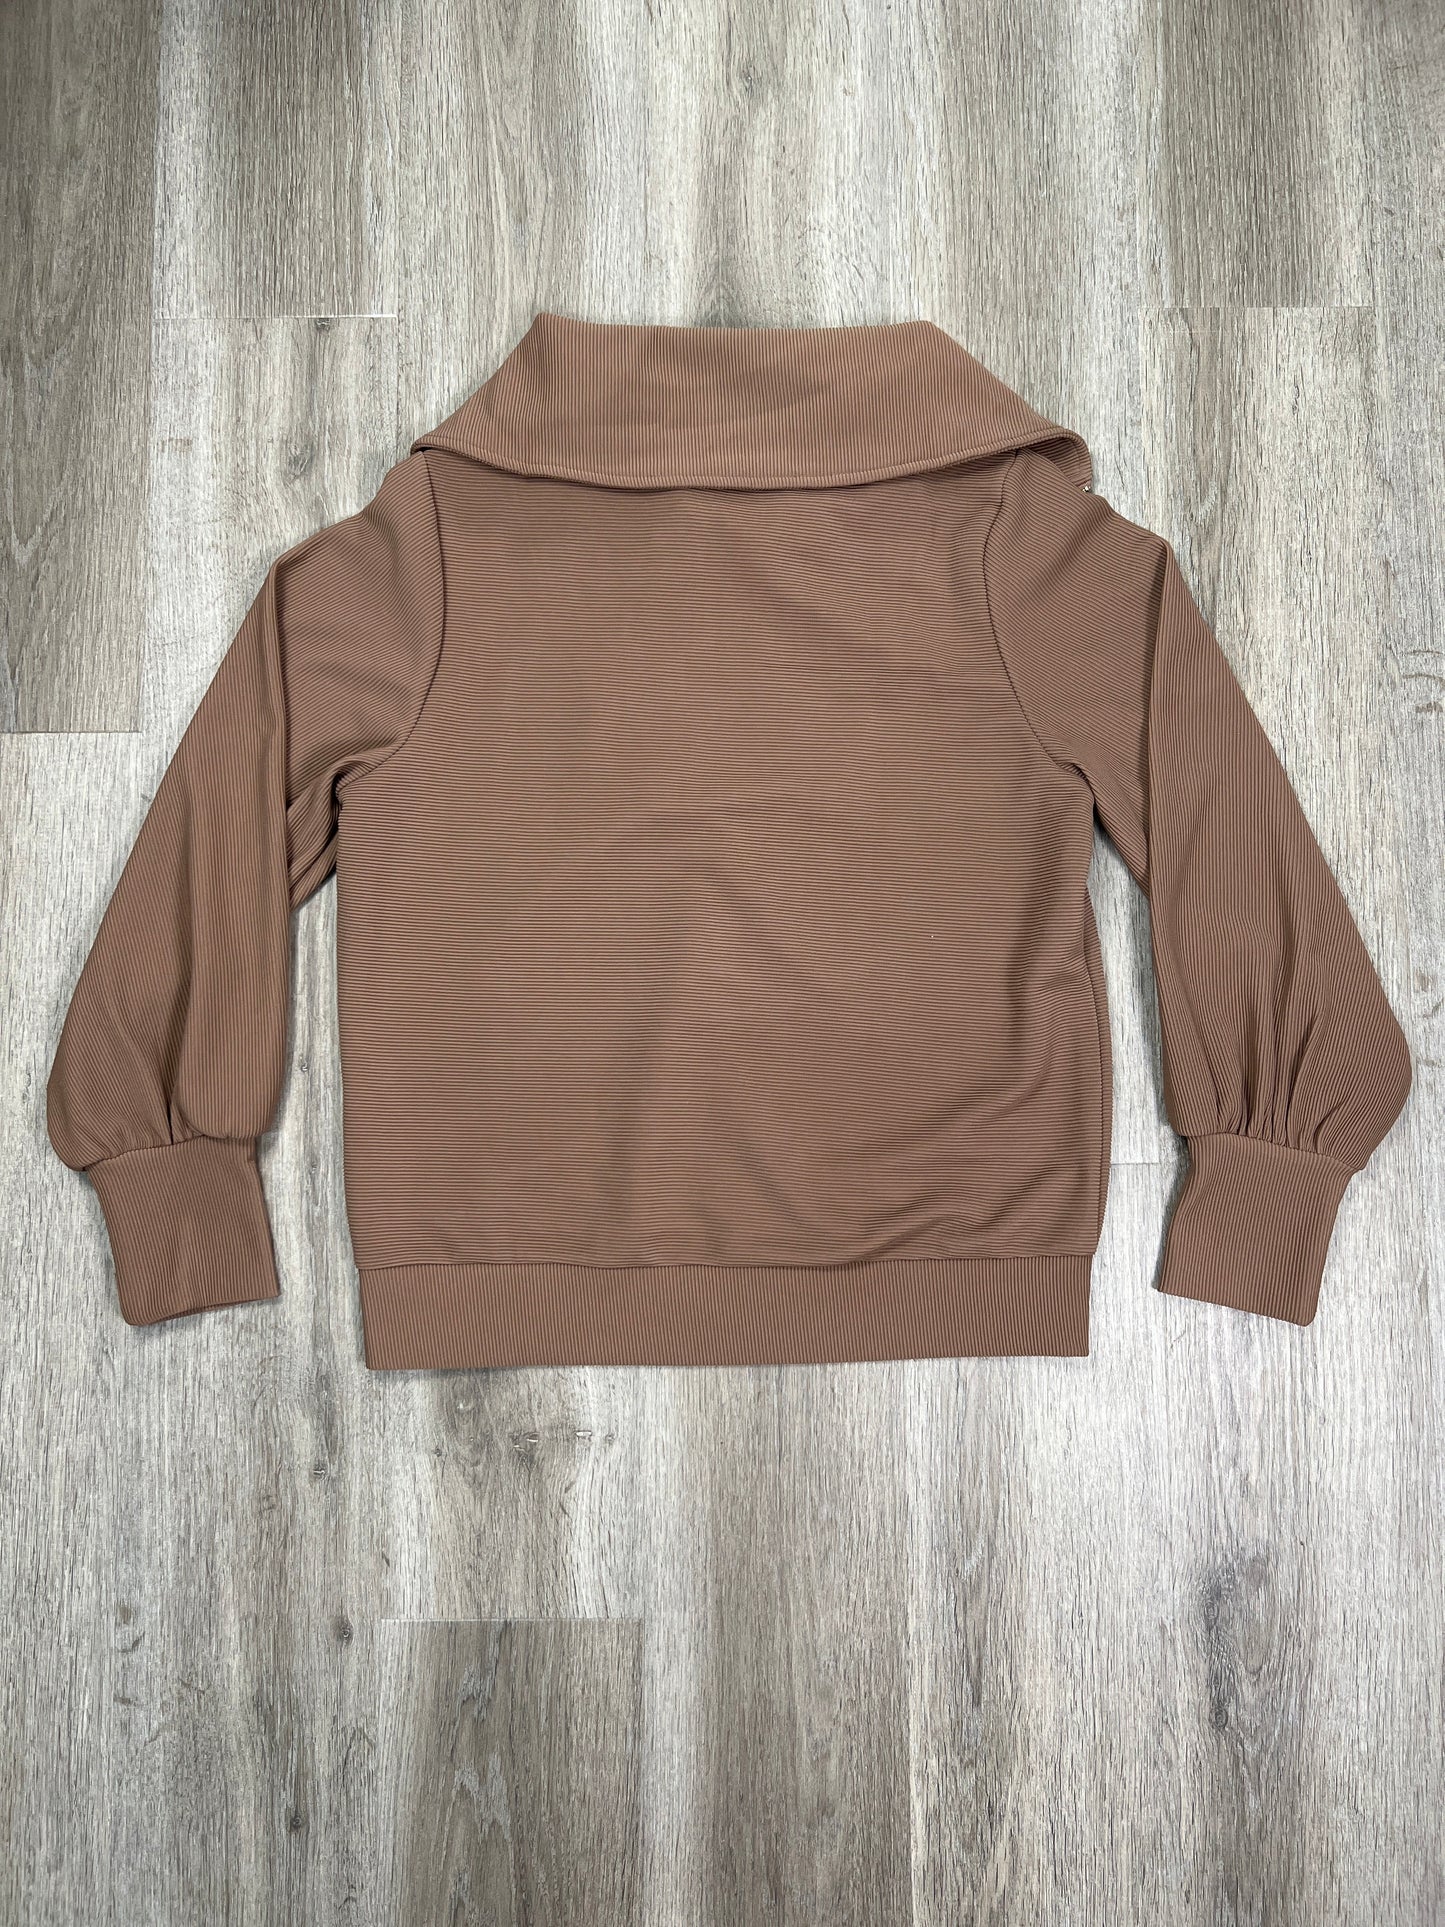 Sweatshirt Hoodie By EFAN Size: S